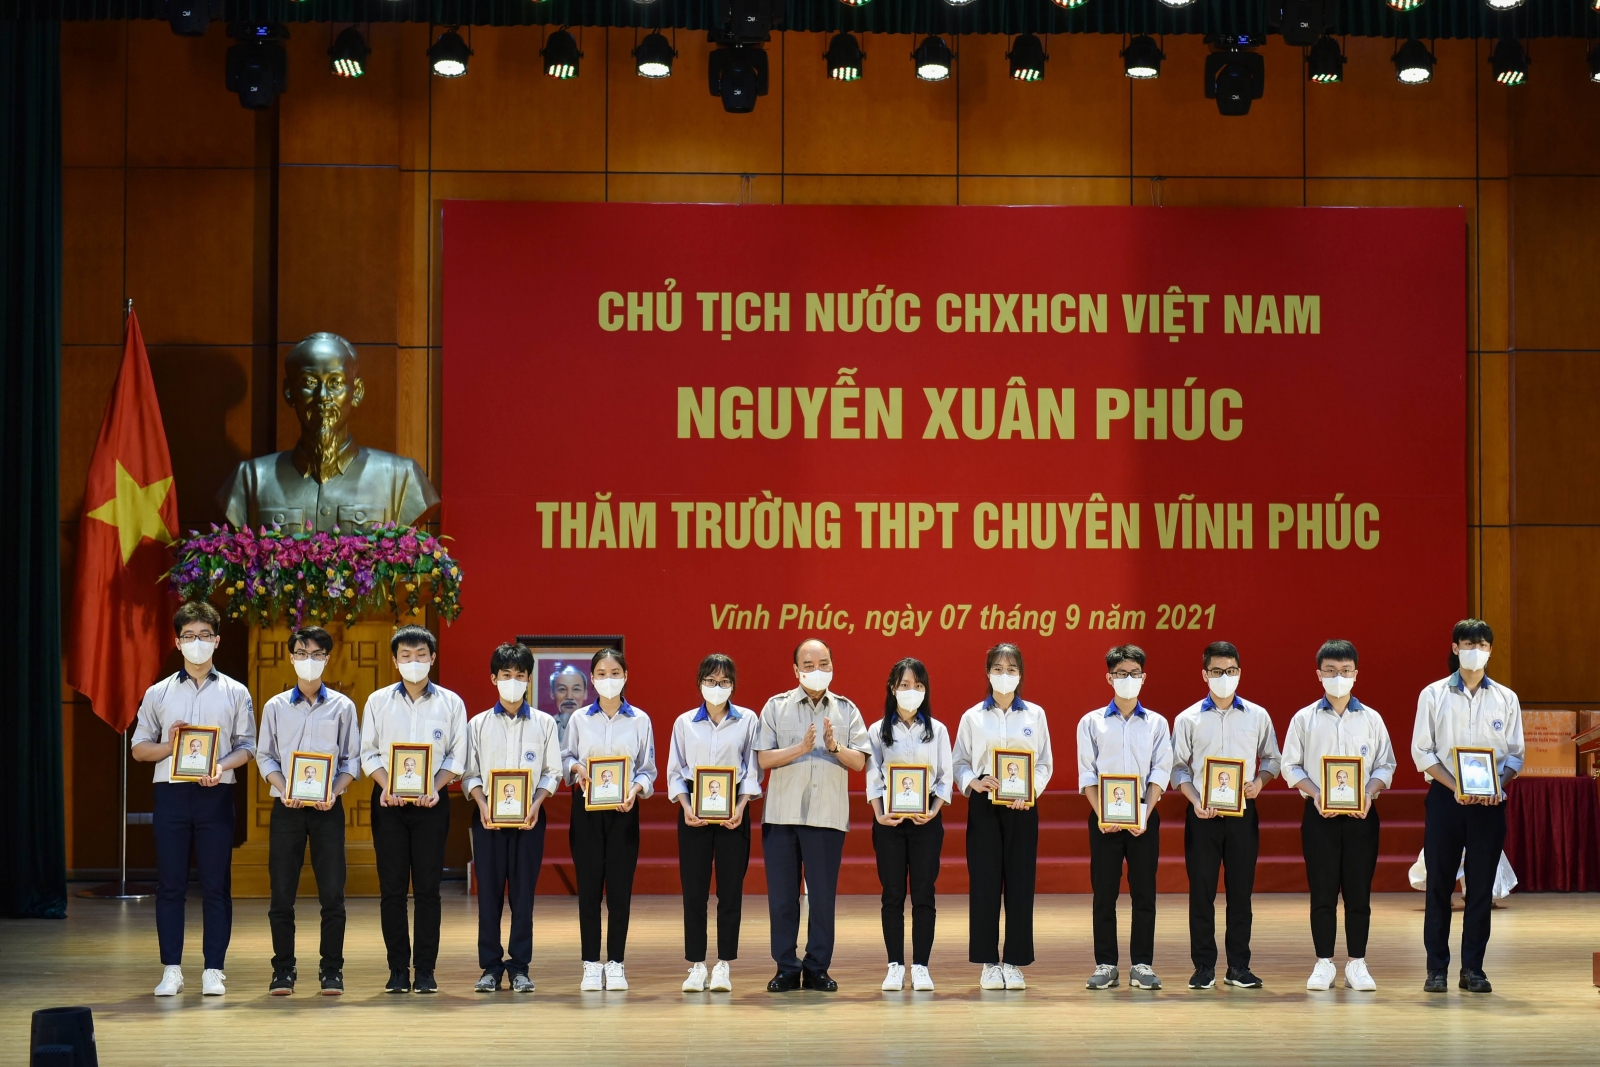 Chủ tịch nước Nguyễn Xuân Phúc: Trường chuyên là môi trường đào tạo nhân tài cho các địa phương và đất nước